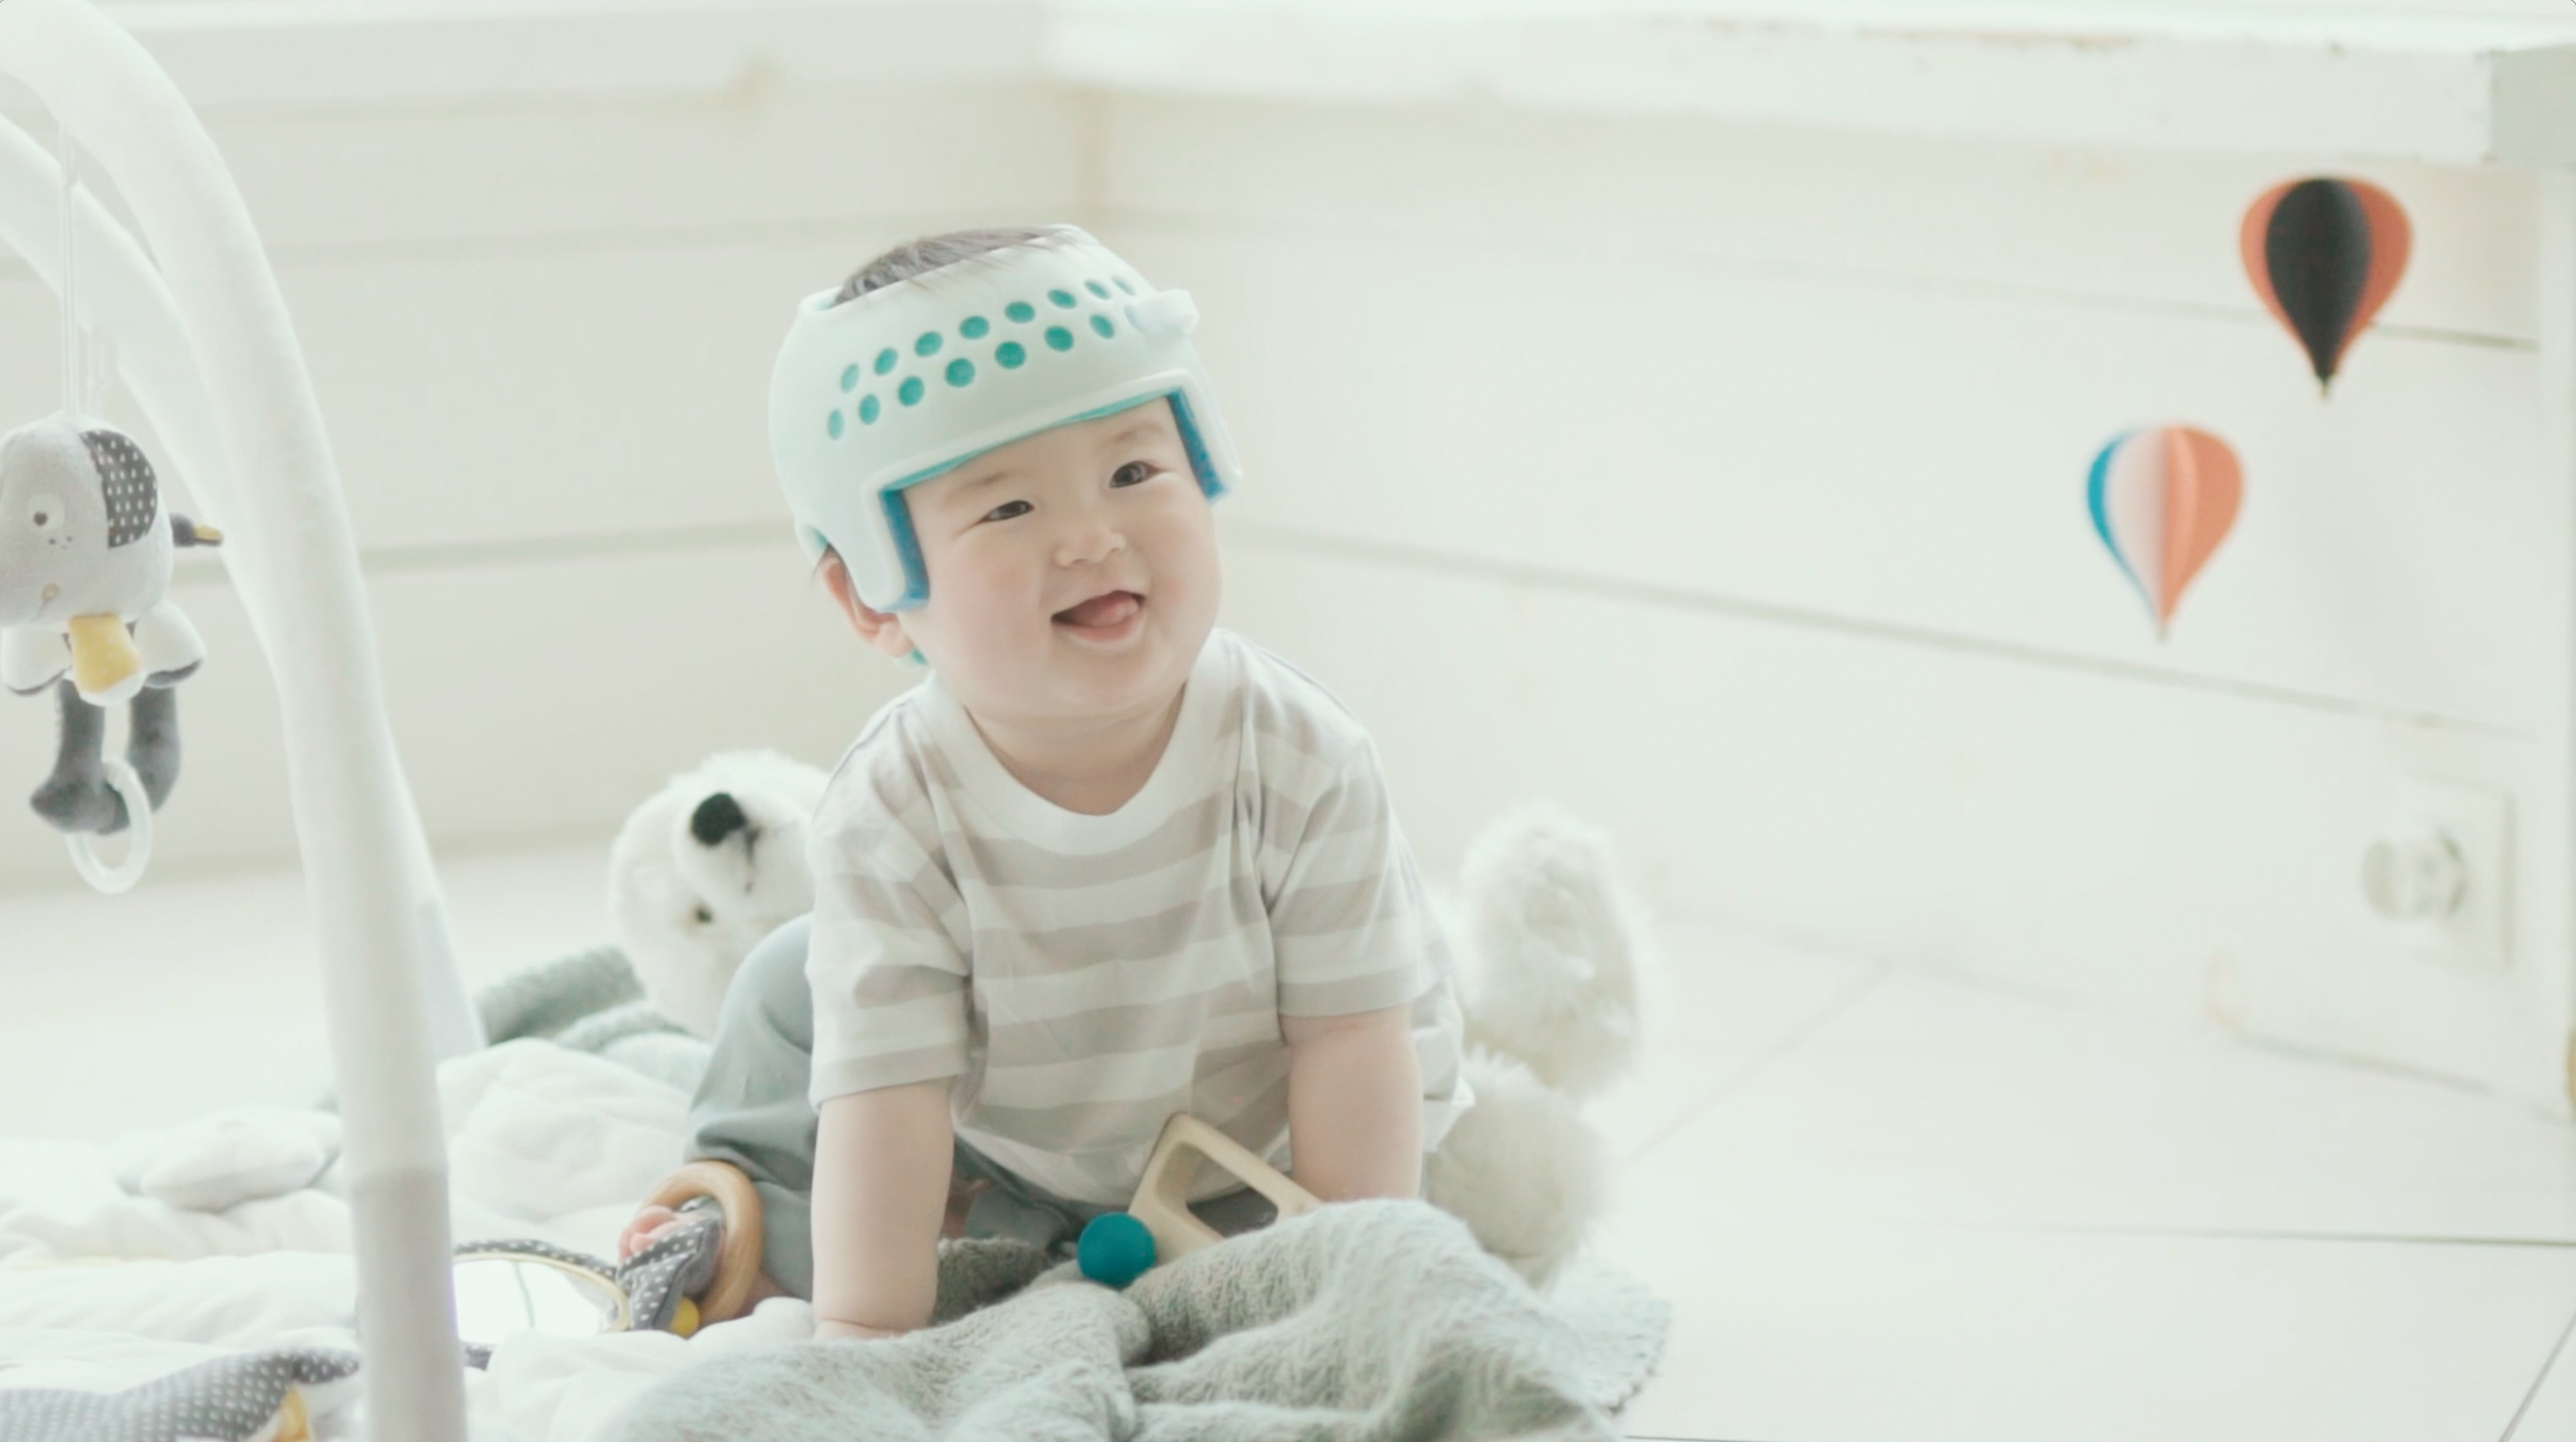 赤ちゃんの 頭のゆがみ を矯正するヘルメット アイメット が19年度グッドデザイン賞受賞 株式会社ジャパン メディカル カンパニーのプレスリリース